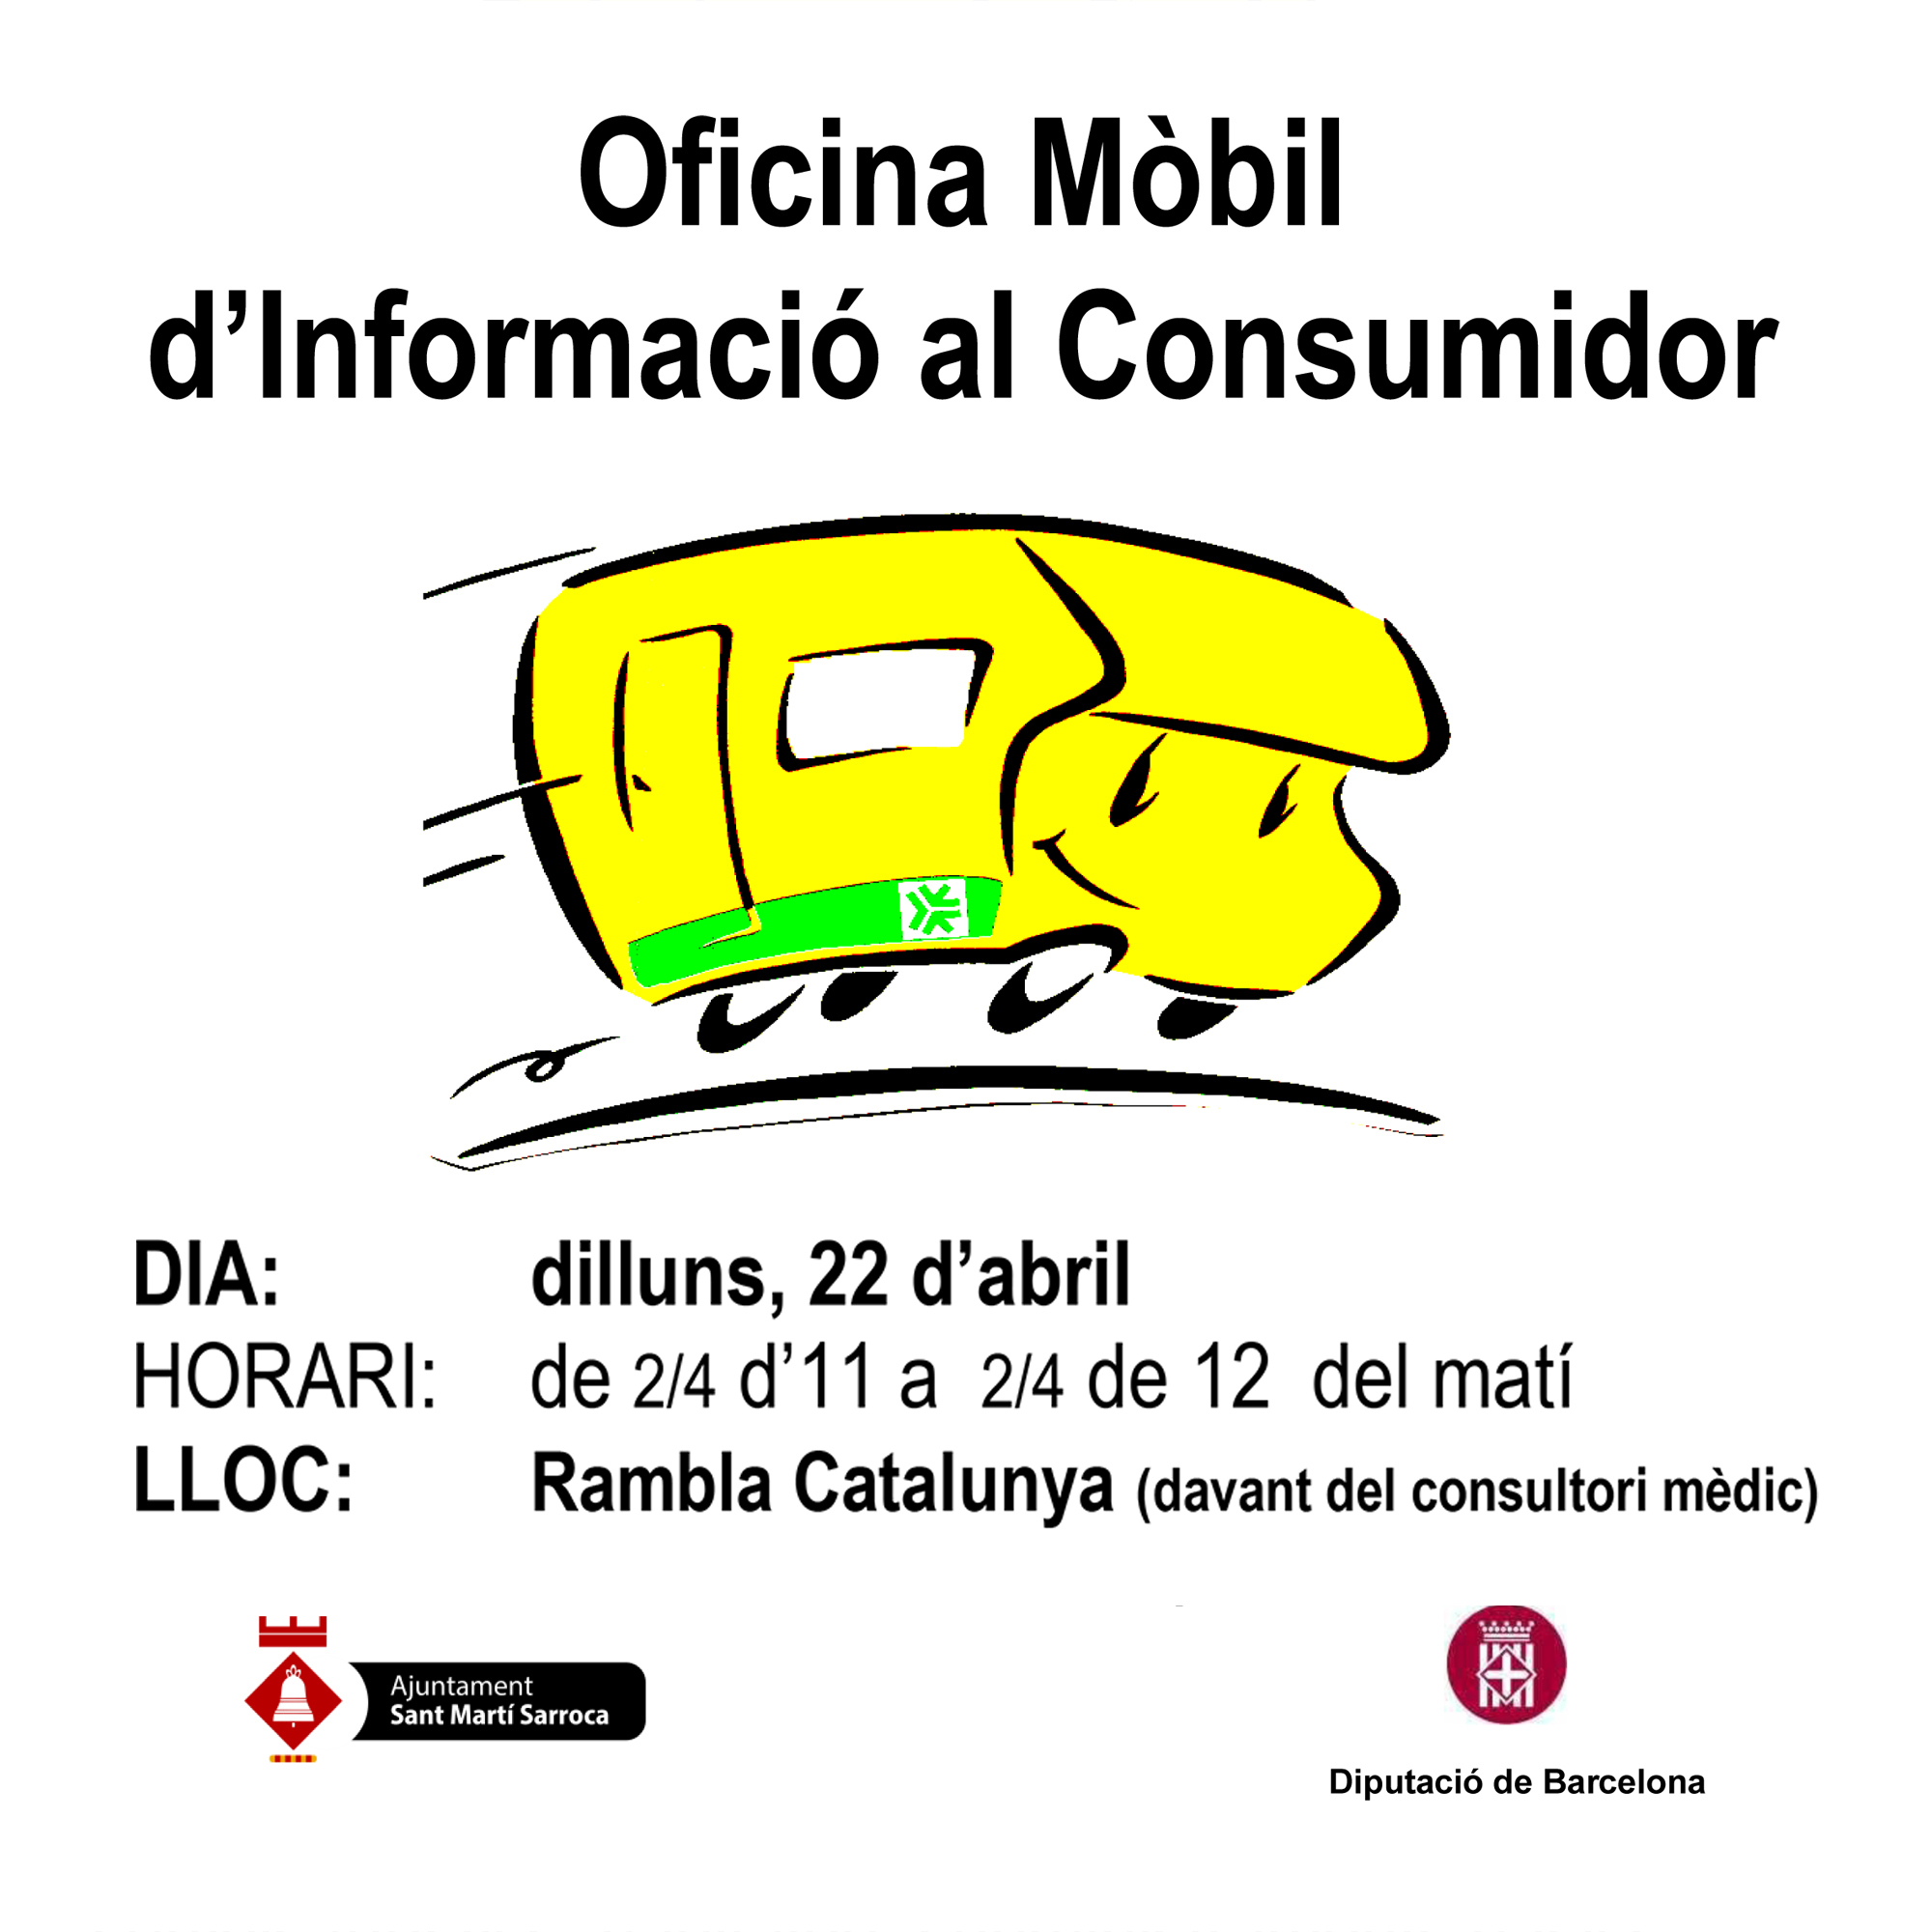 Oficina Mòbil d'Informació al Consumidor